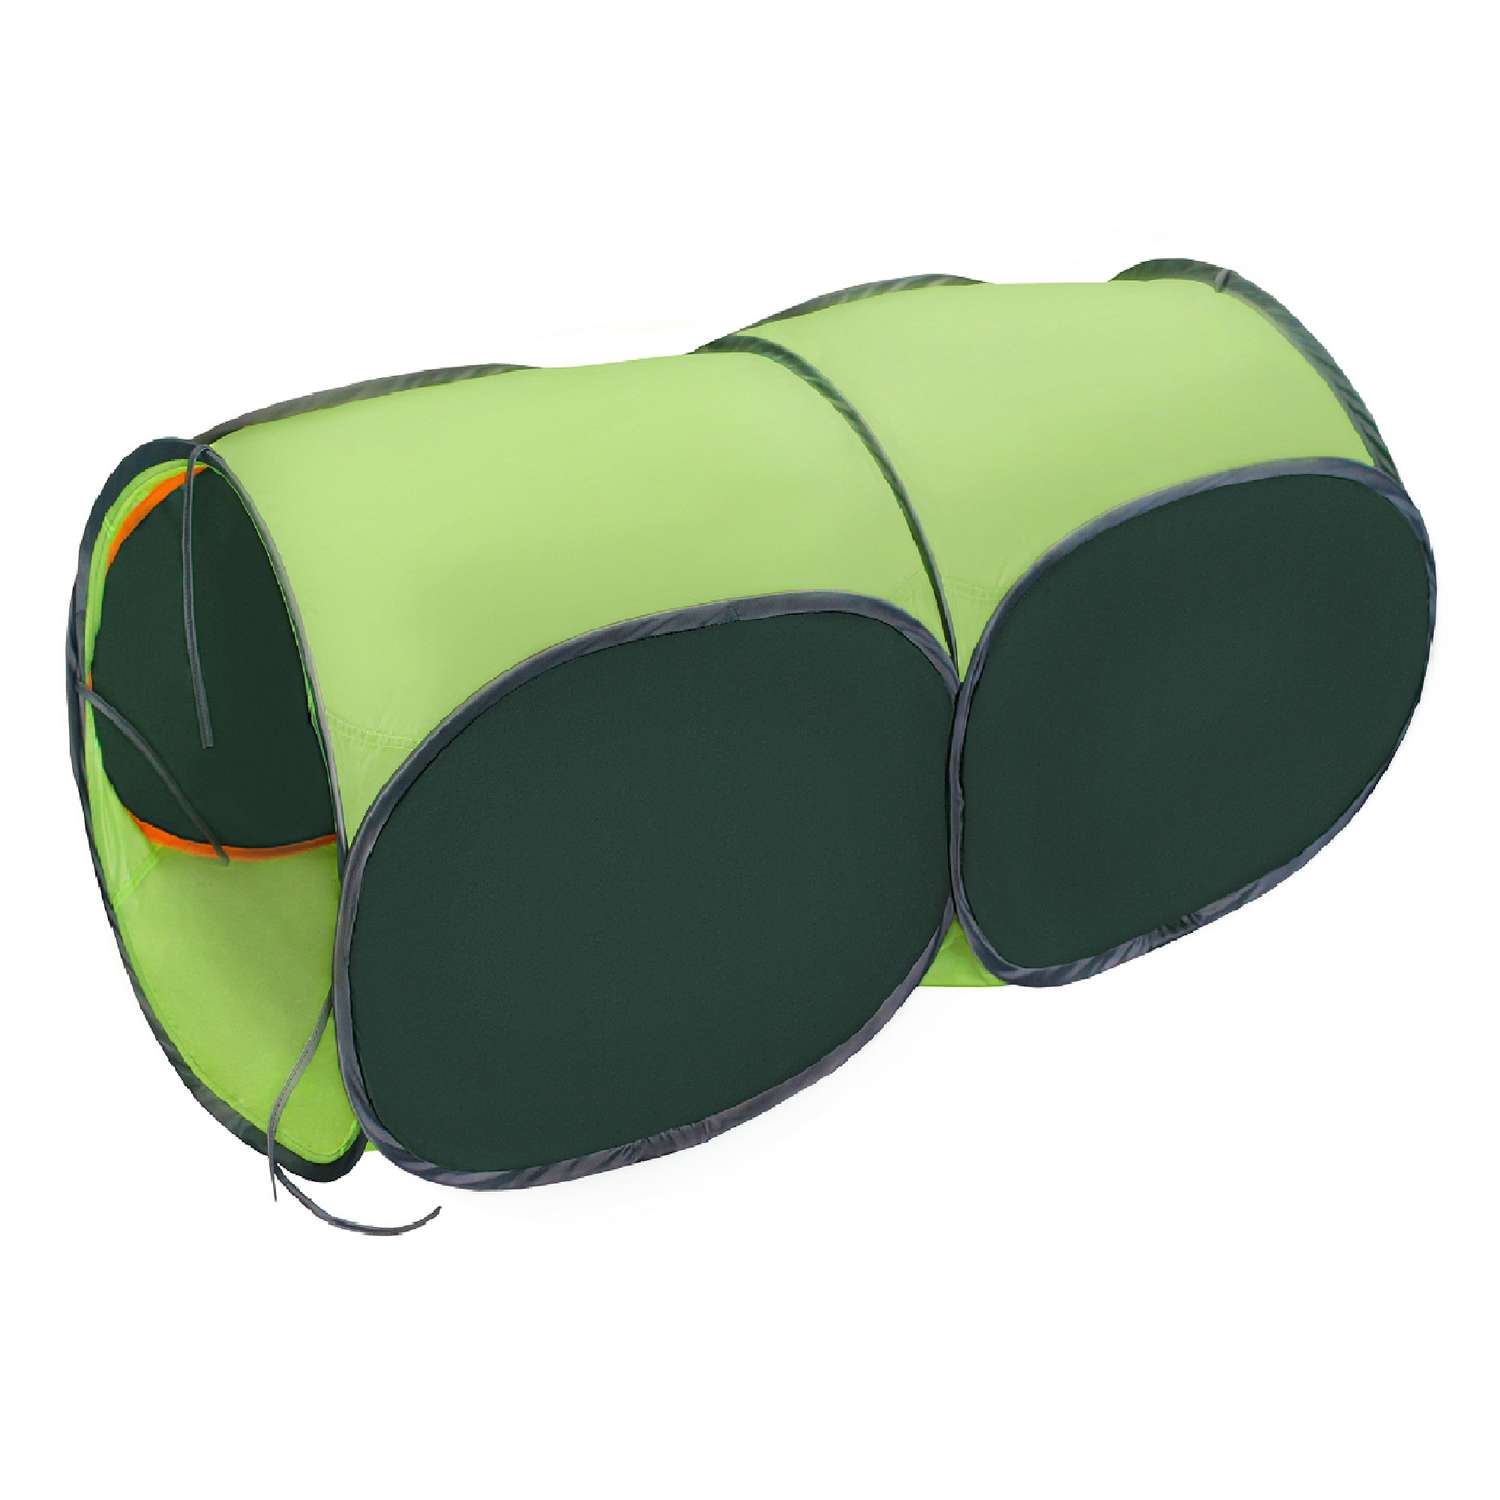 Тоннель для палатки Belon familia двухсекционный цвет зелёный и салатовый - фото 1